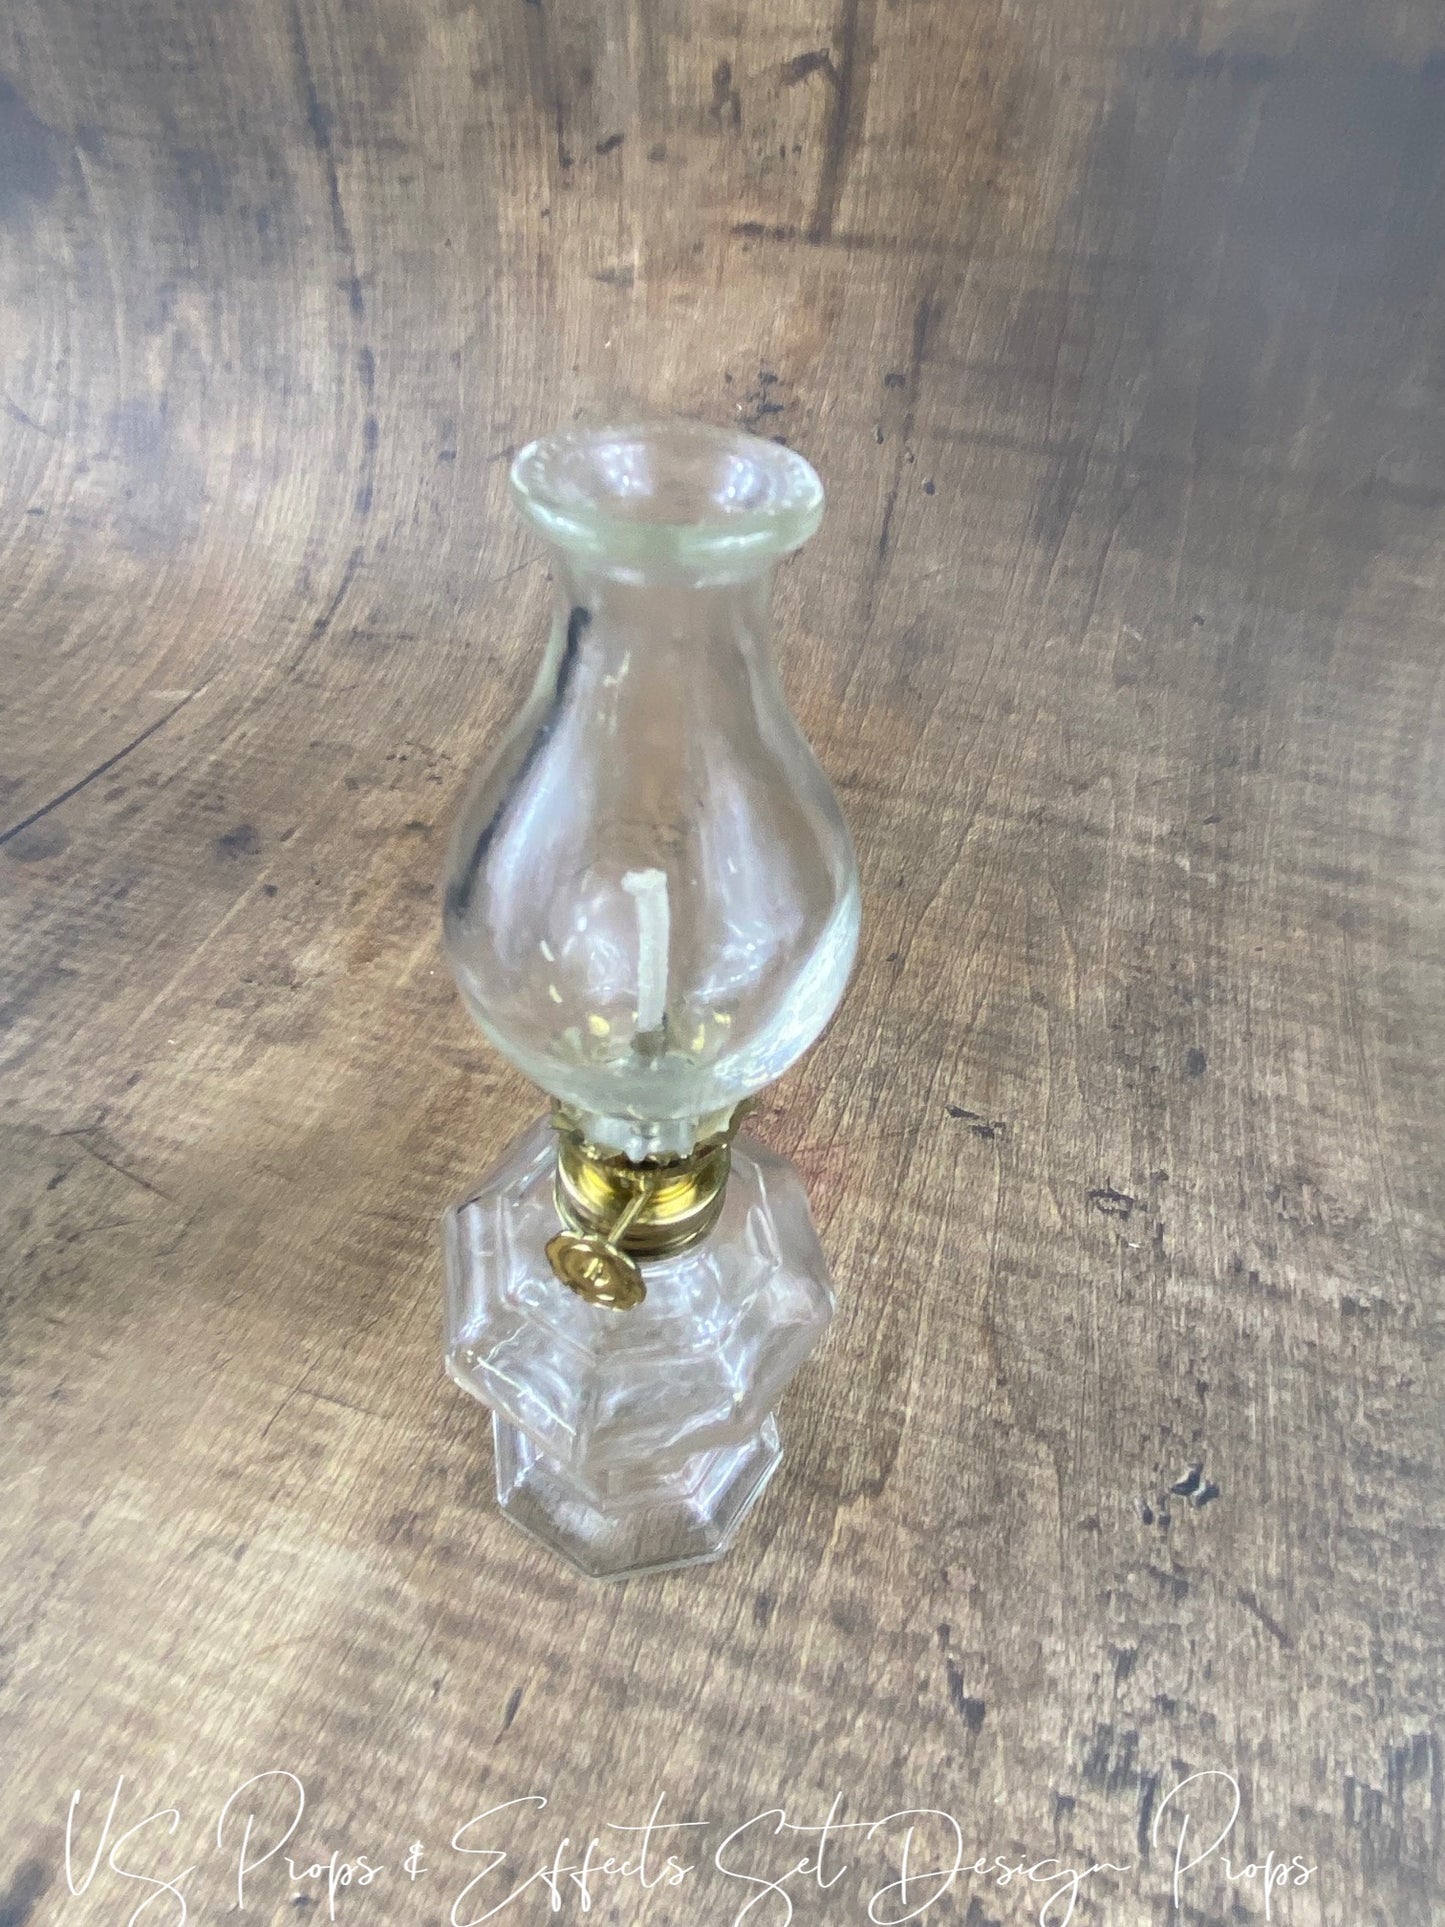 US's Prop Shop Vintage presents Vintage Oil Lamps